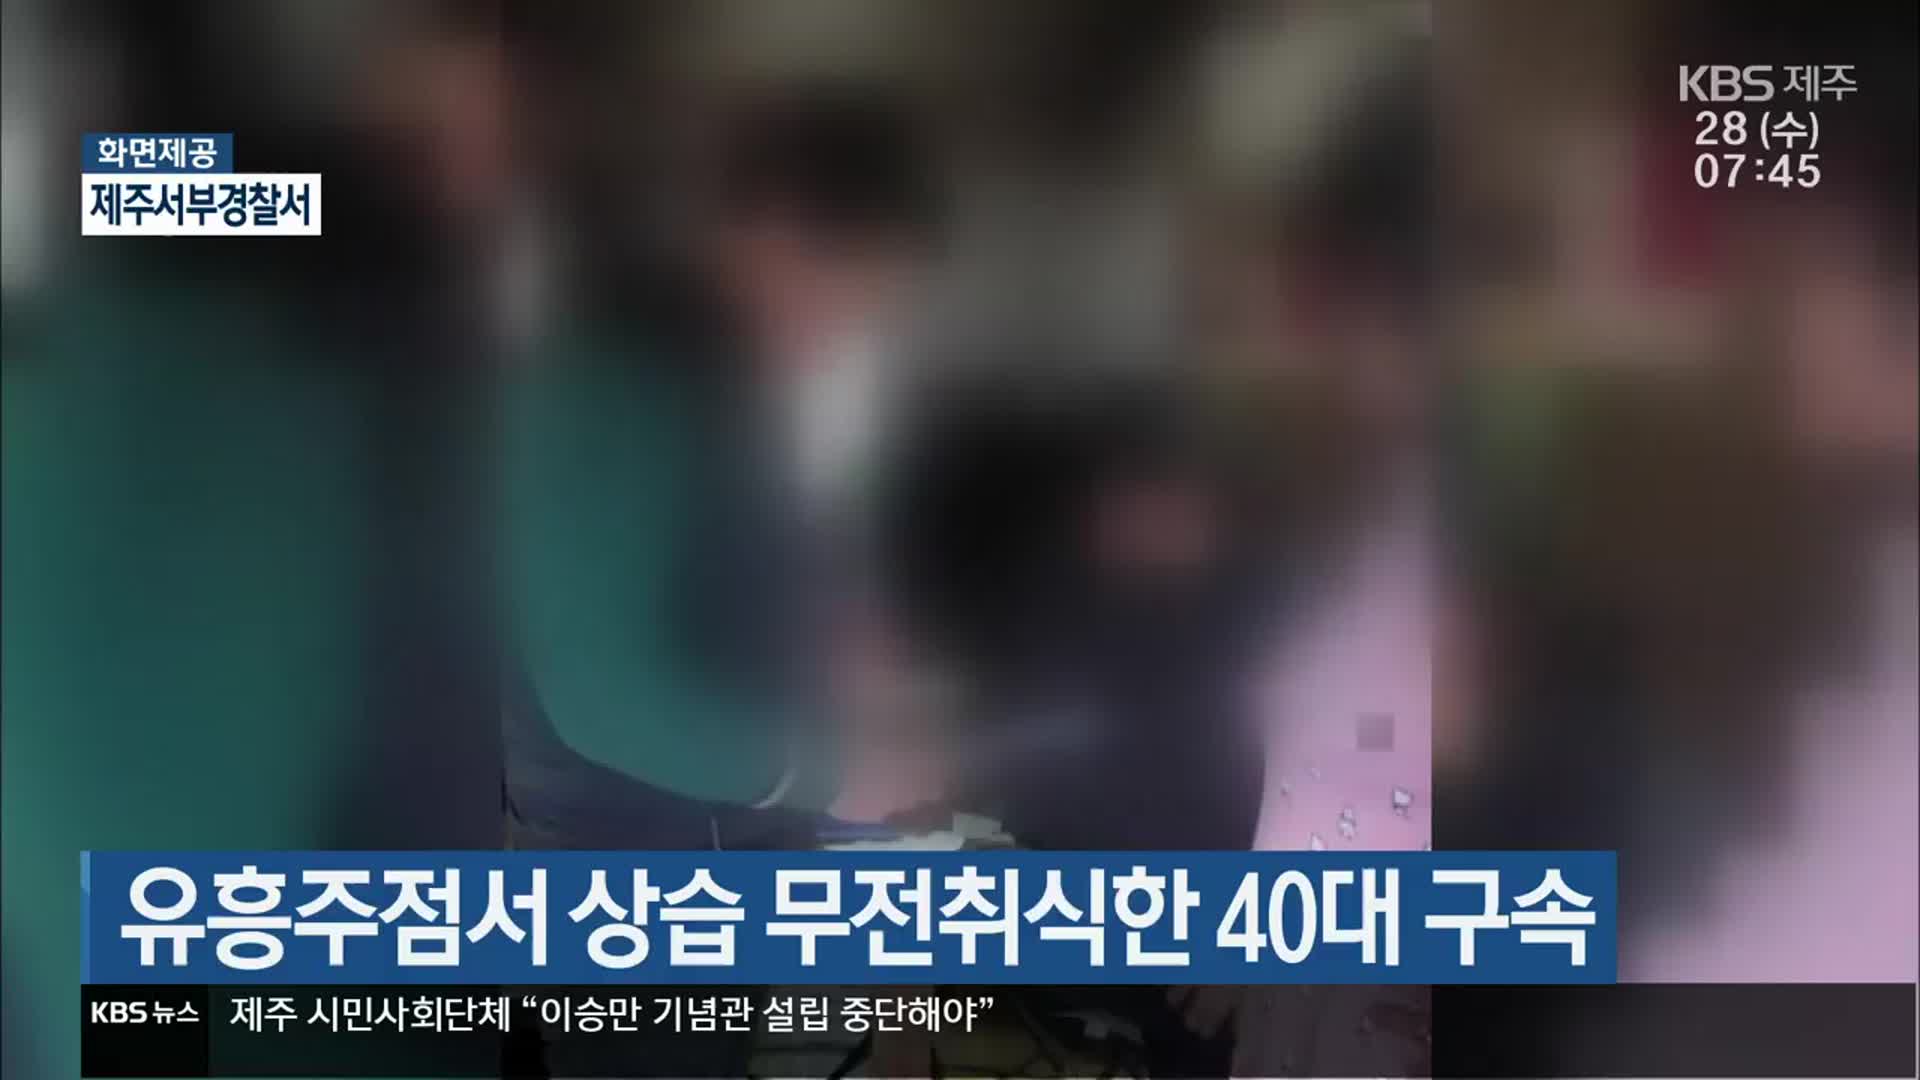 유흥주점서 상습 무전취식한 40대 구속